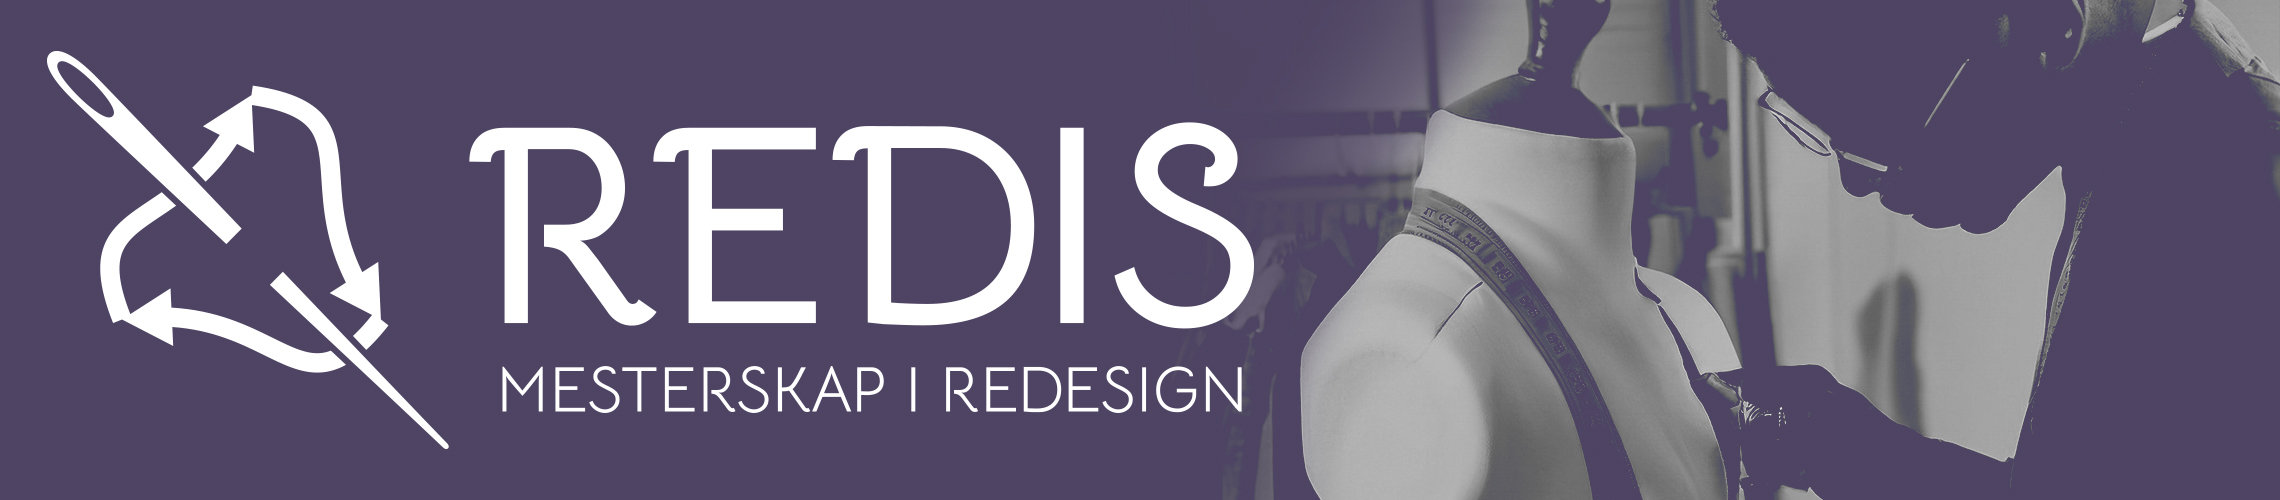 Redis - mesterskap i redesign